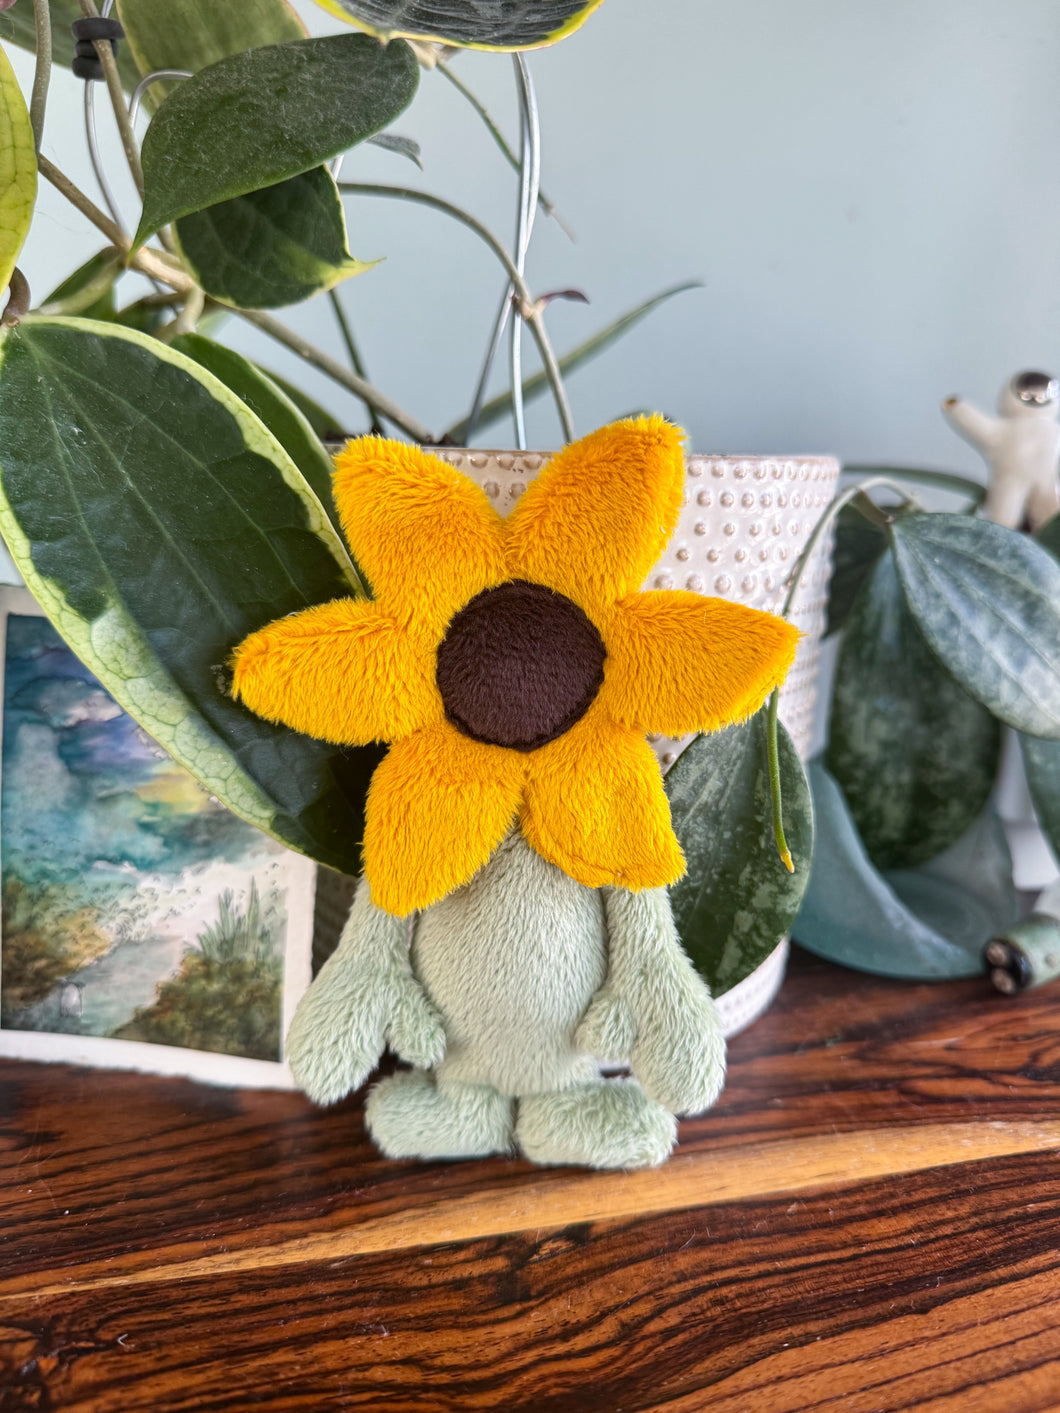 Tiny Sunflower-naut 🌻